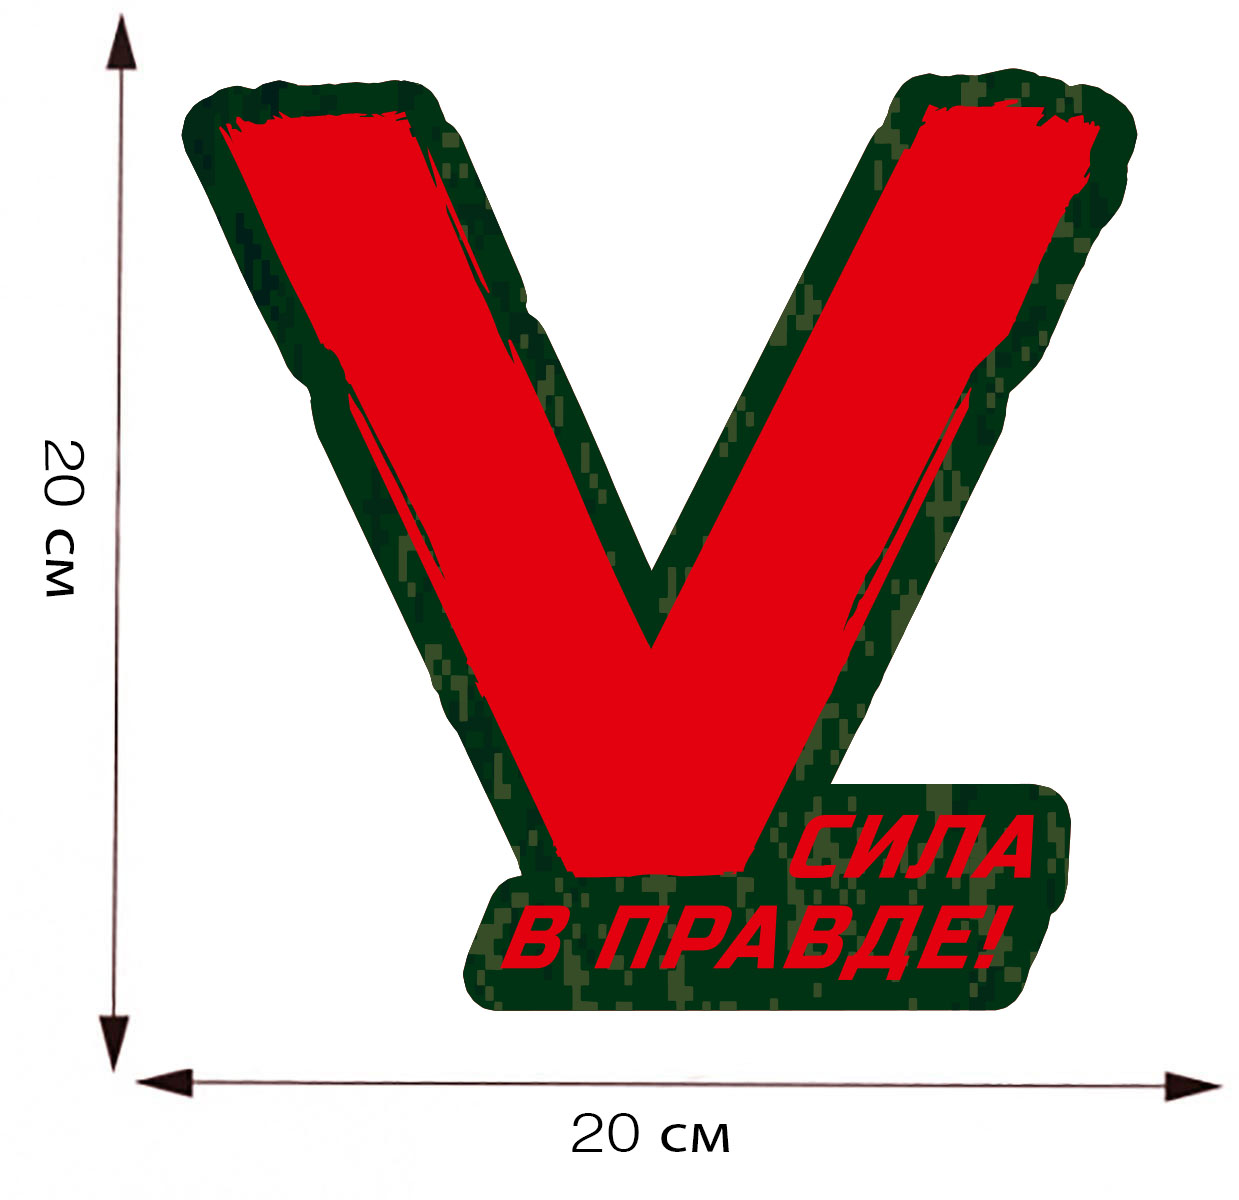 Наклейка на машину в виде буквы "V" - размер